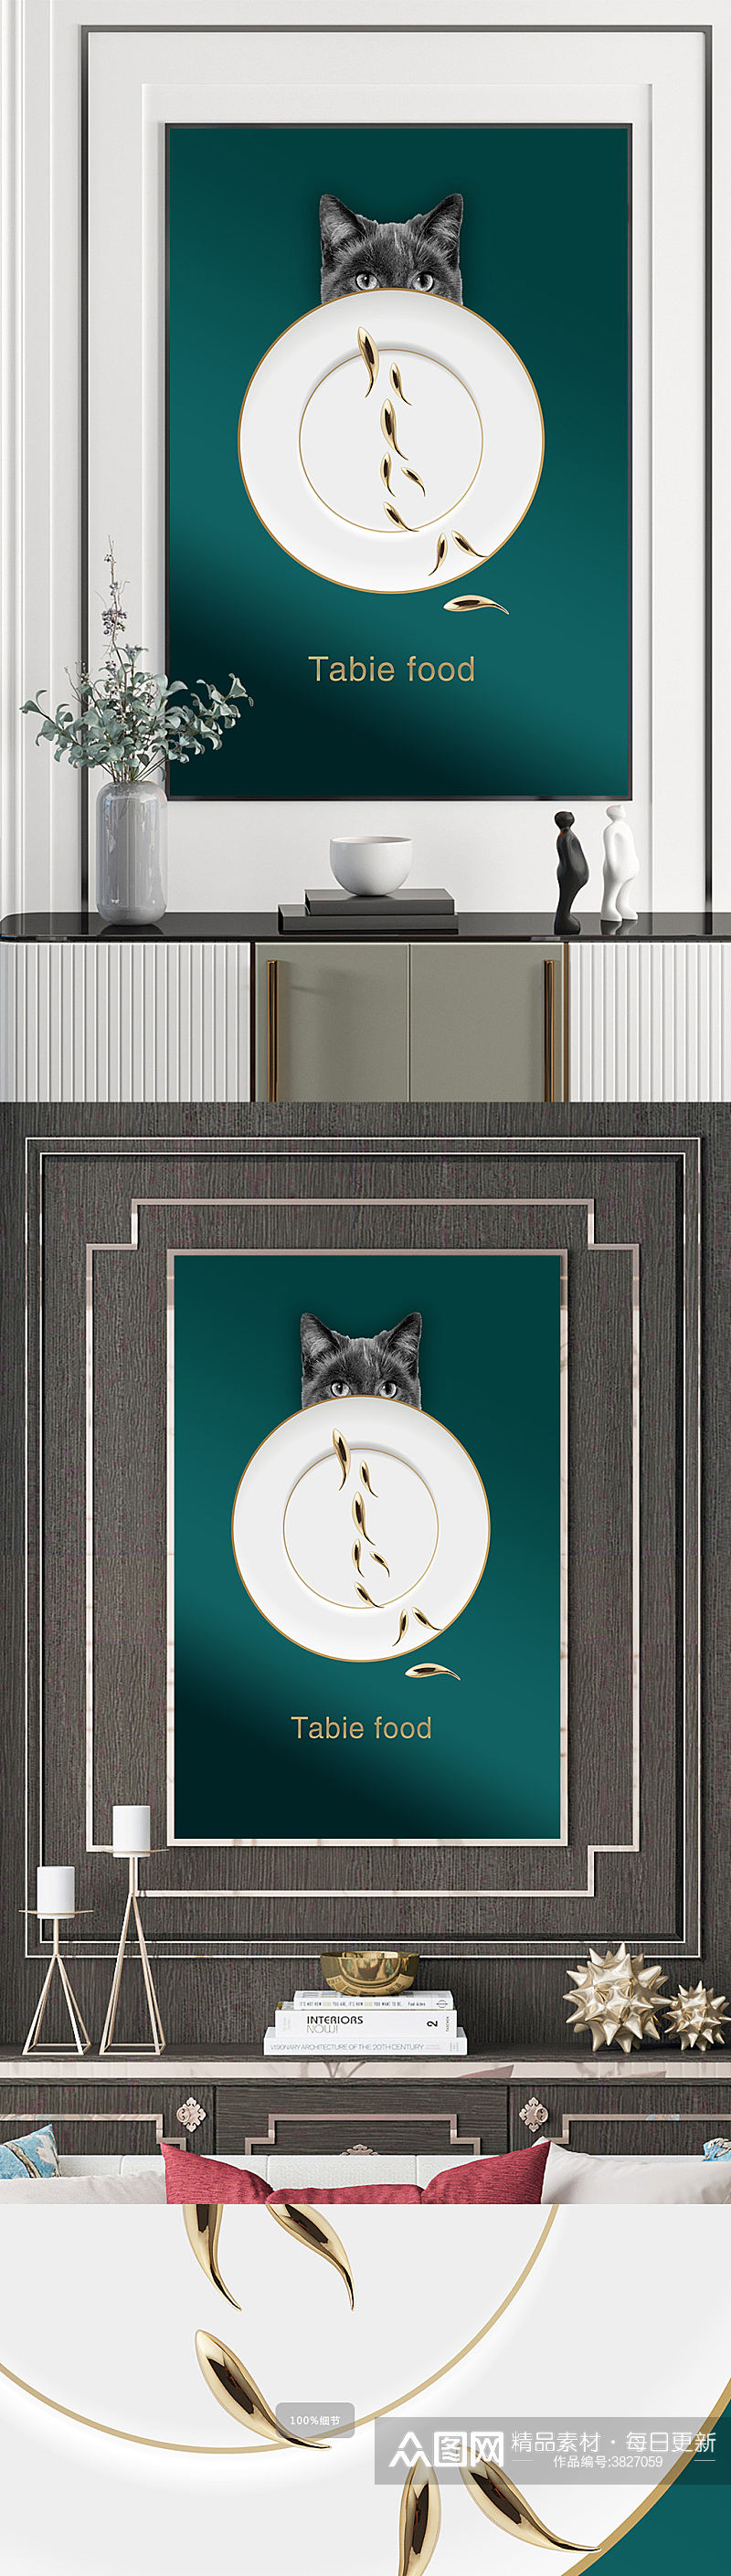 餐厅餐盘猫咪装饰画素材